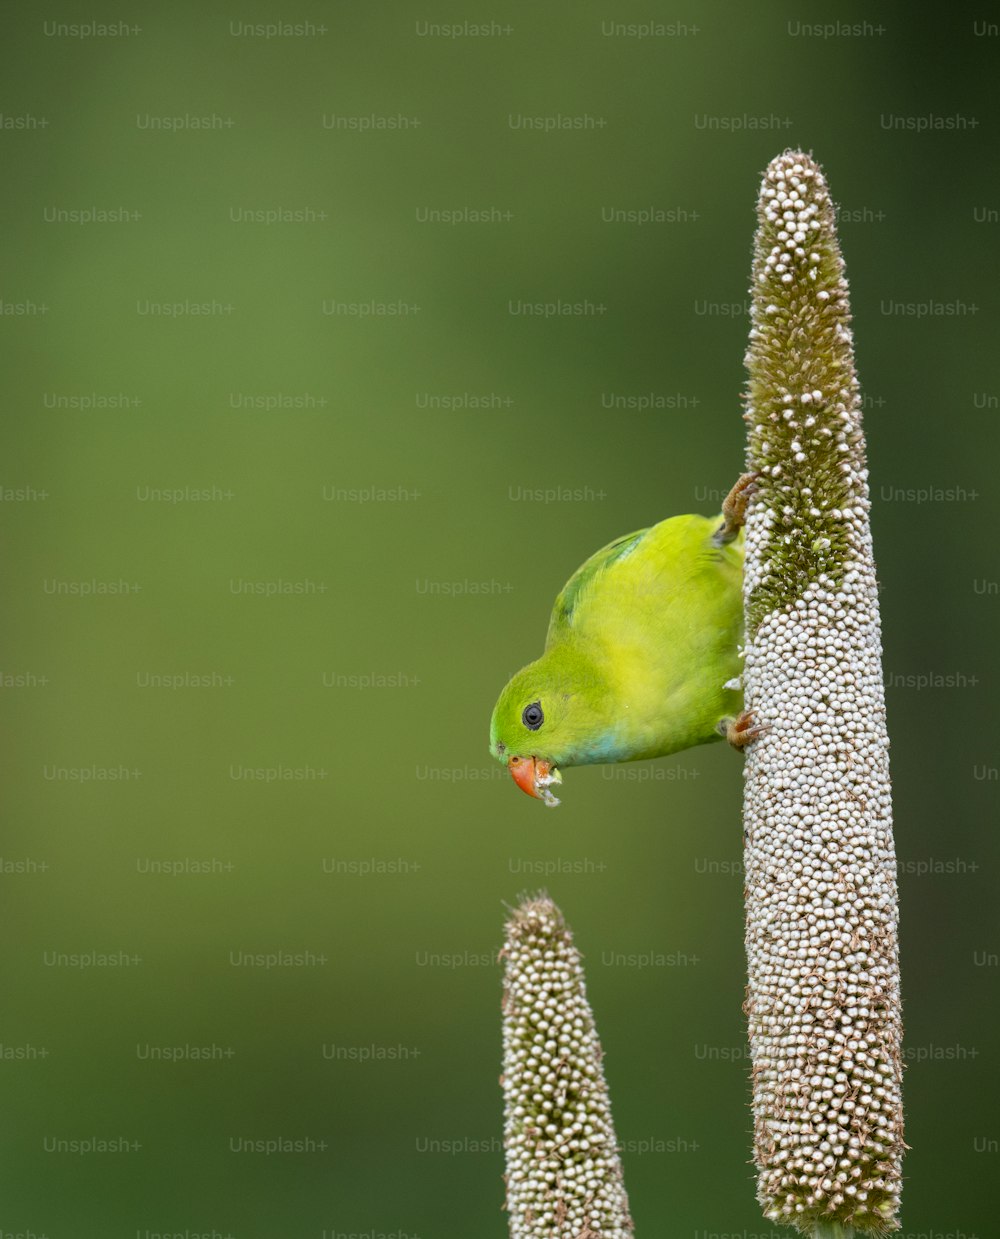 un pequeño pájaro verde posado en lo alto de una planta